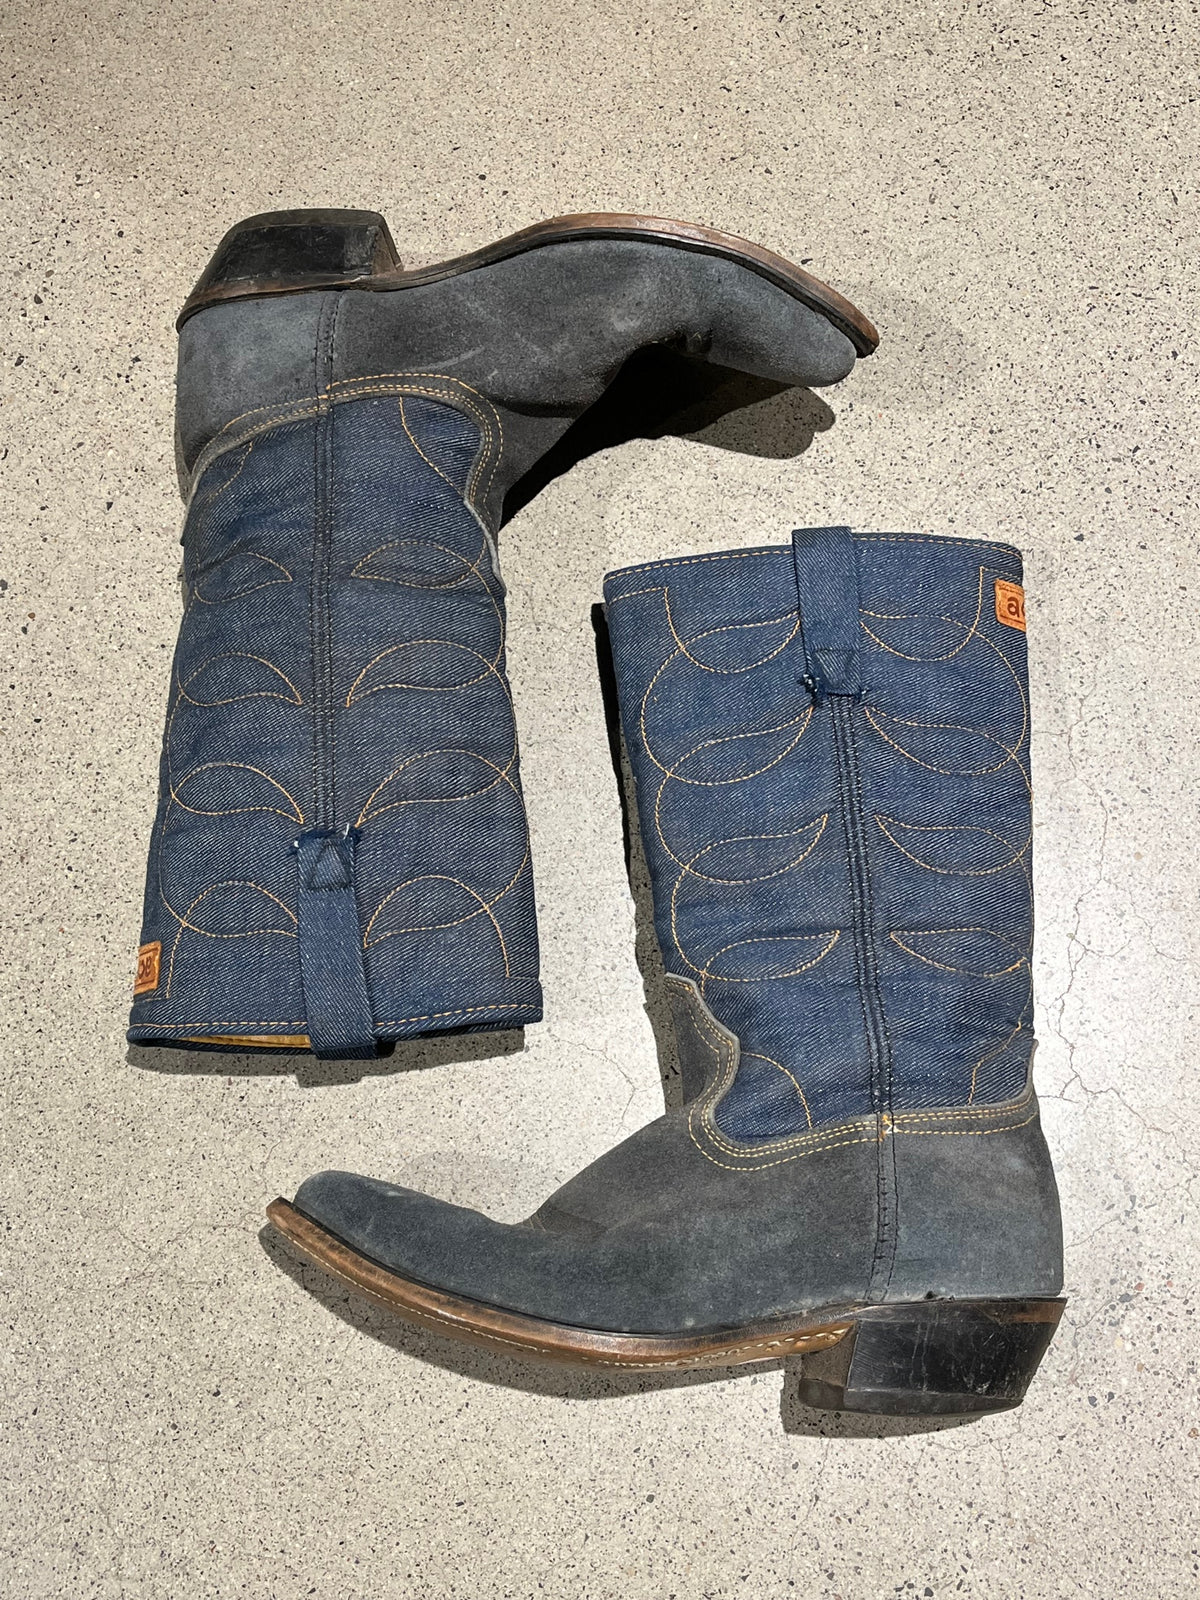 Vintage Blue Denim Cowboy Boots